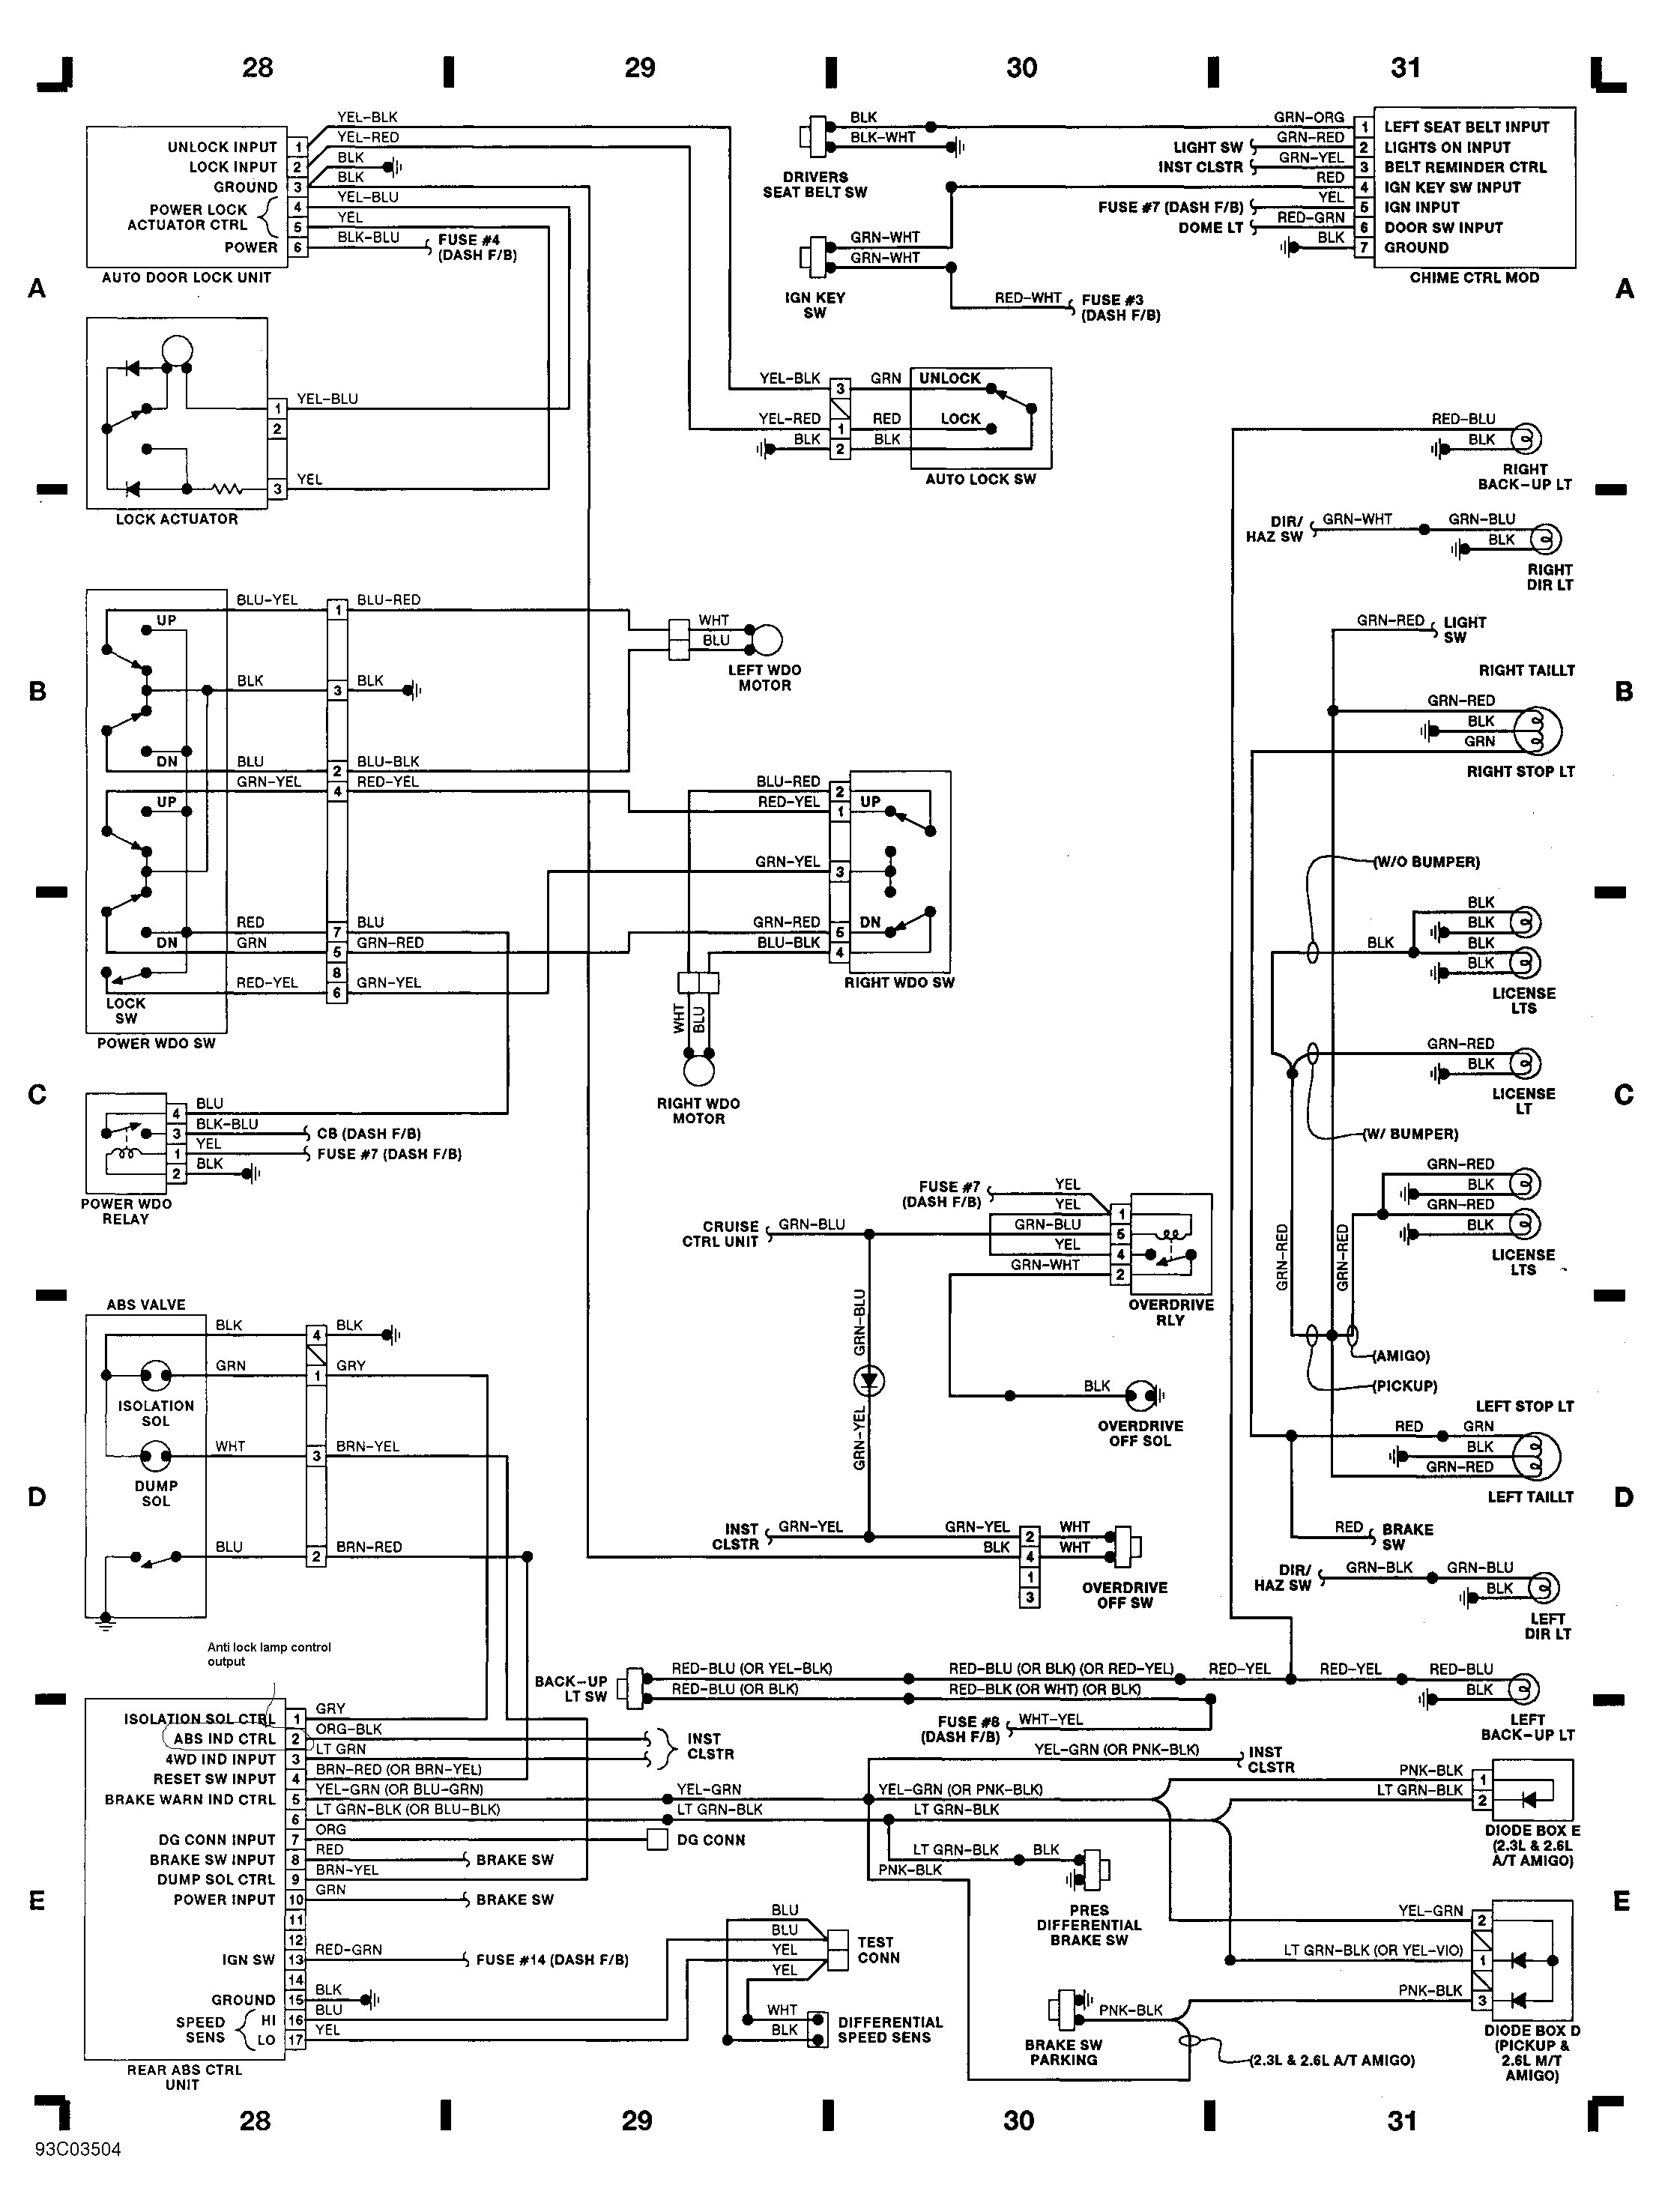 2001 isuzu Rodeo Engine Diagram Automotive Wiring Diagram isuzu Wiring Diagram for isuzu Npr isuzu Of 2001 isuzu Rodeo Engine Diagram